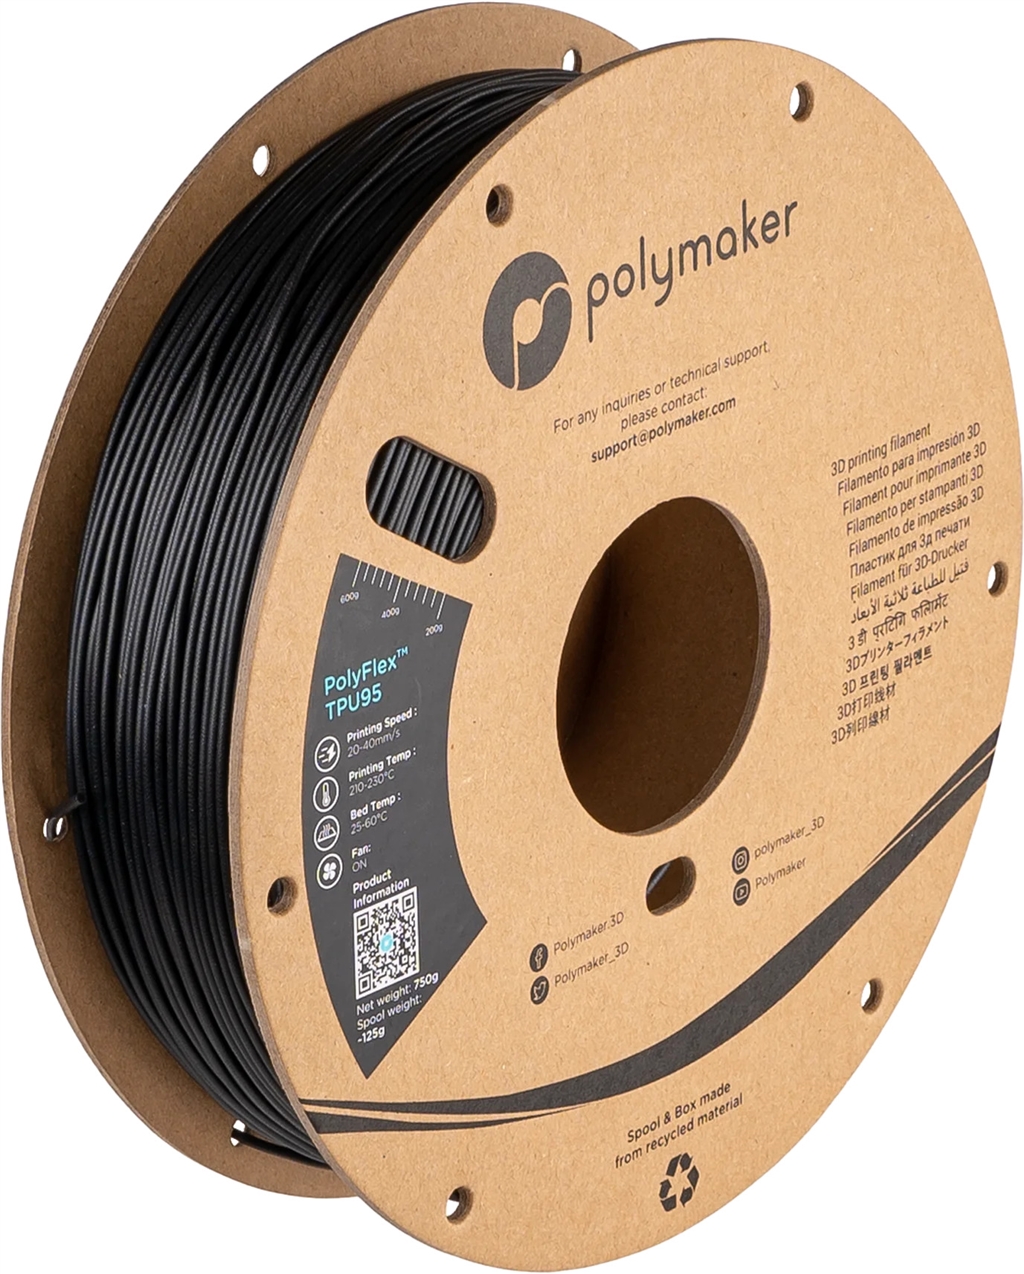 PolyFlex™ TPU95 Series - Black